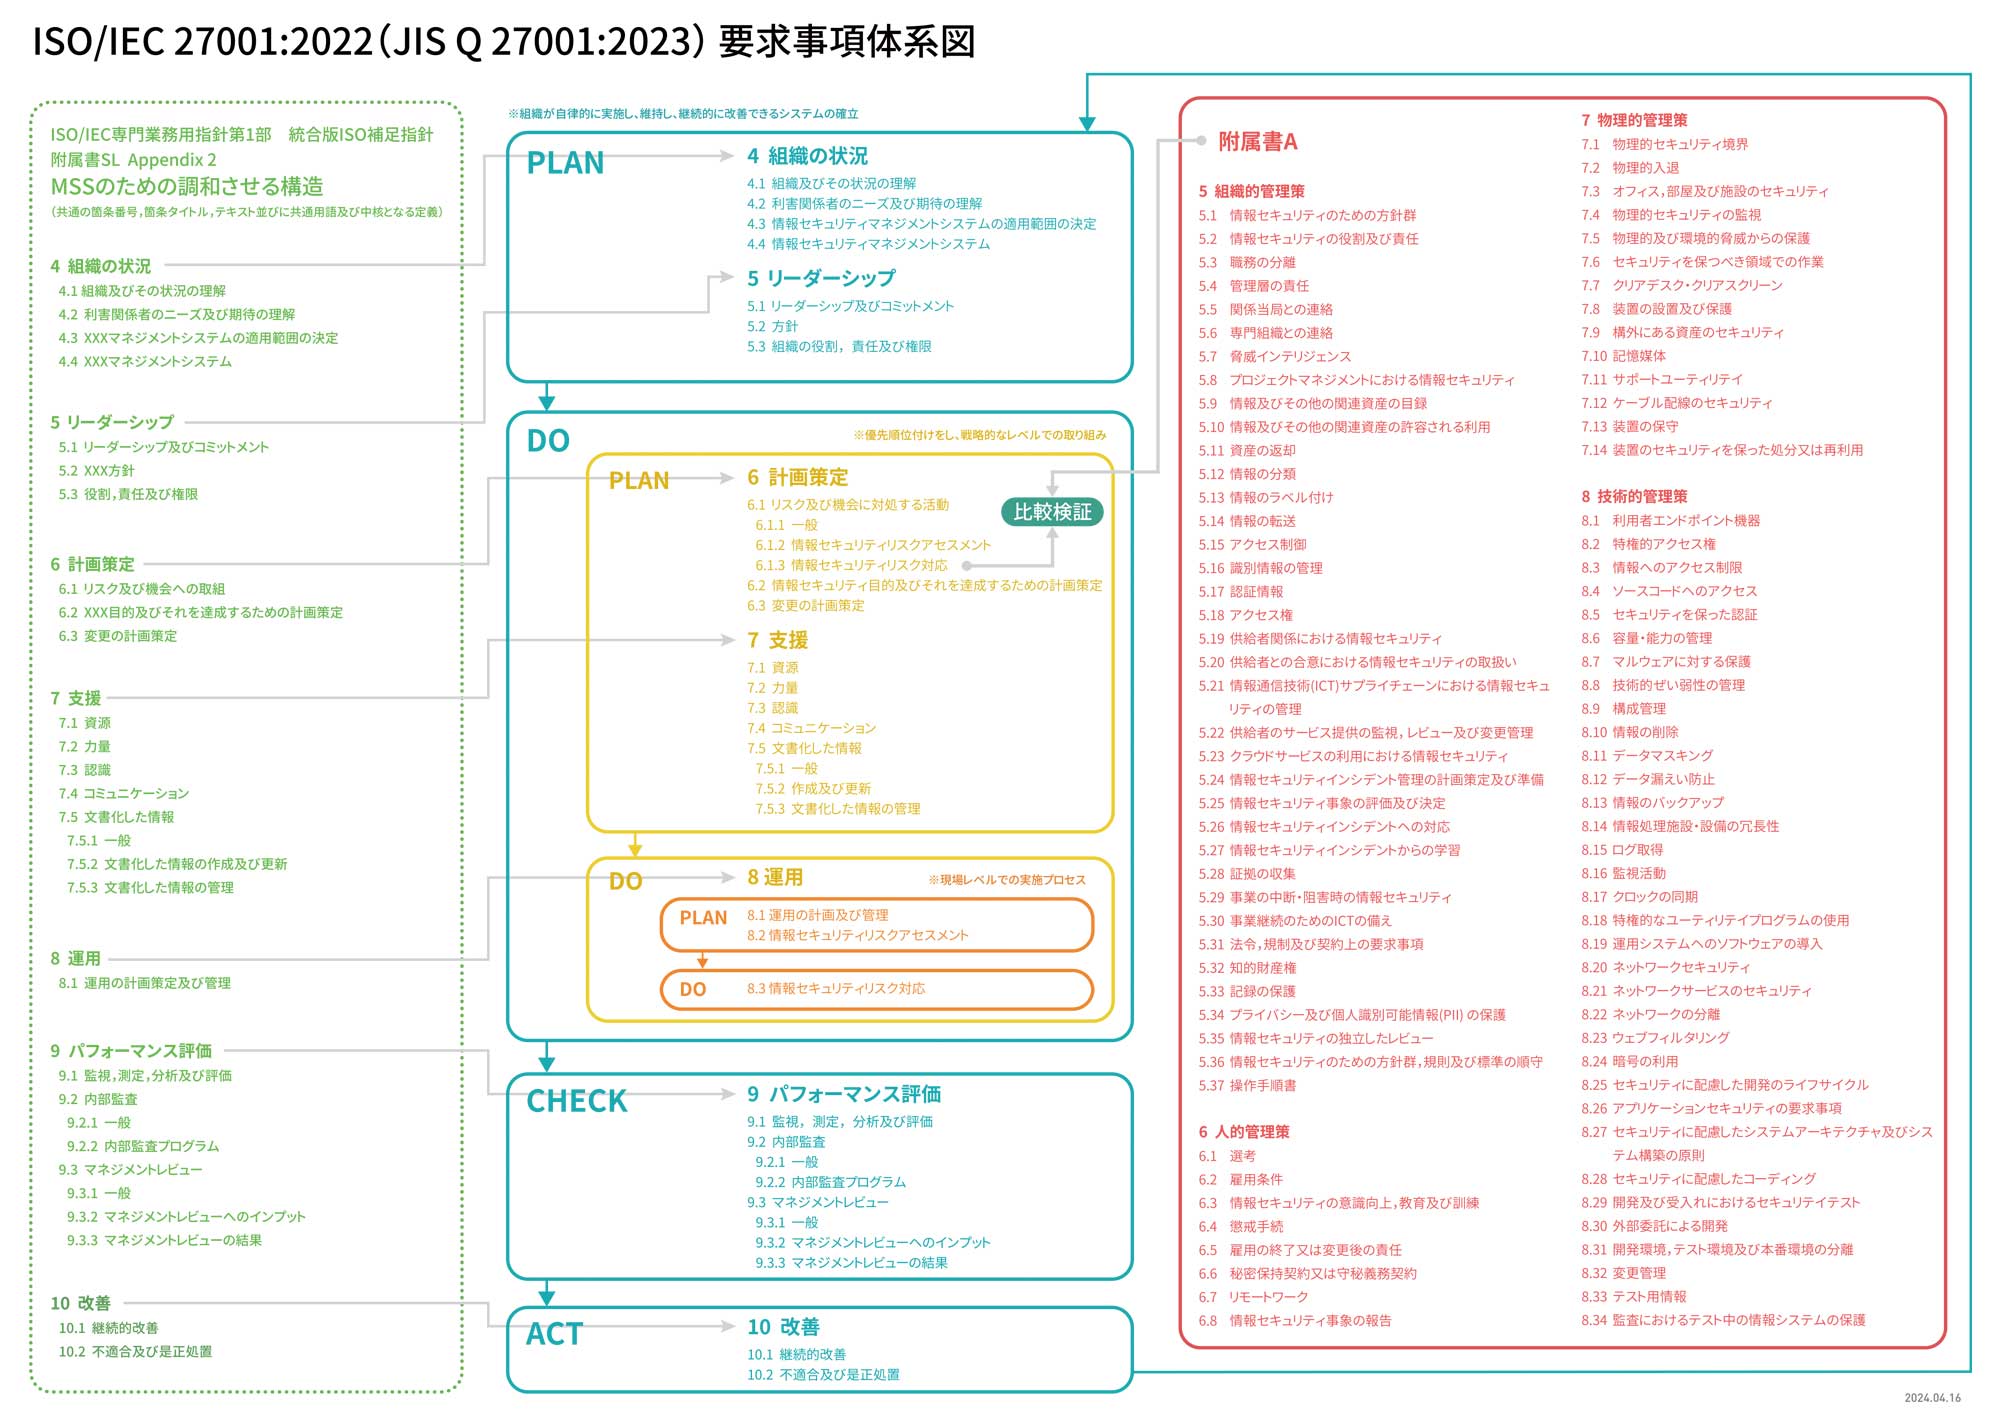 ISO27001:2022 (JIS Q 27001:2023) 要求事項体系図